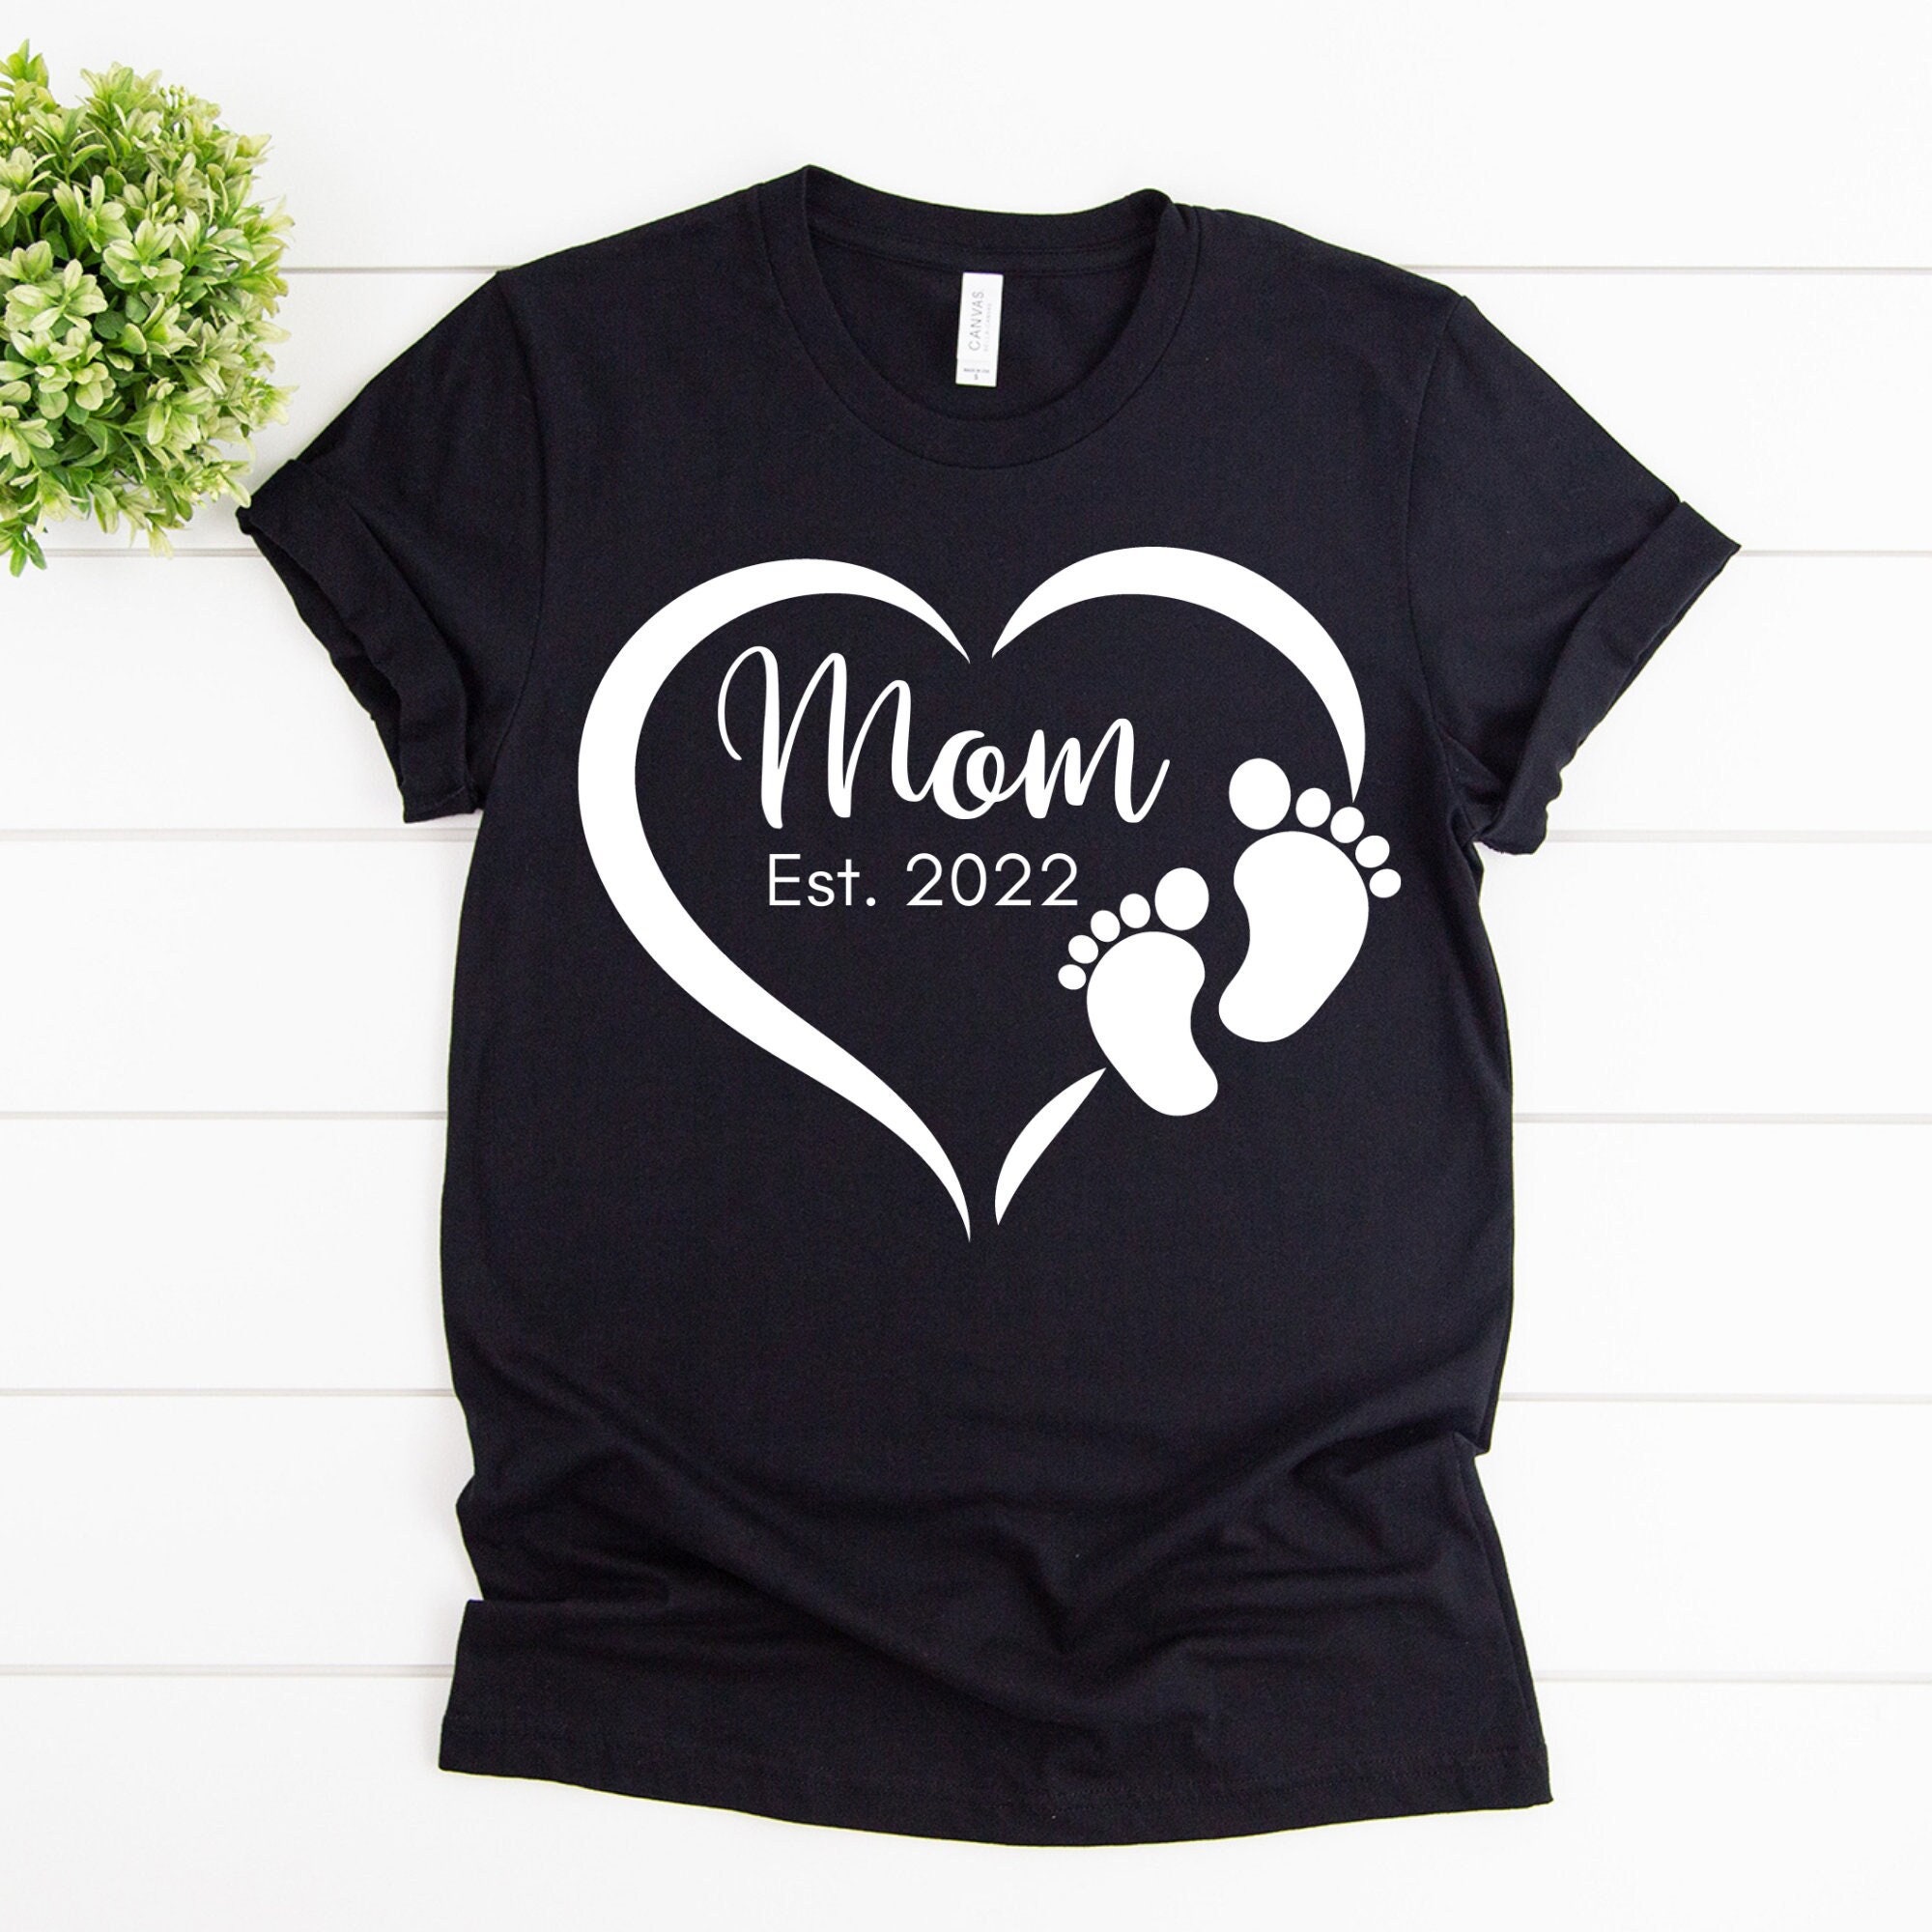 Mom Est. 2022 Shirt Mom Shirt Cute Mom Shirt Gift For Mom | Etsy